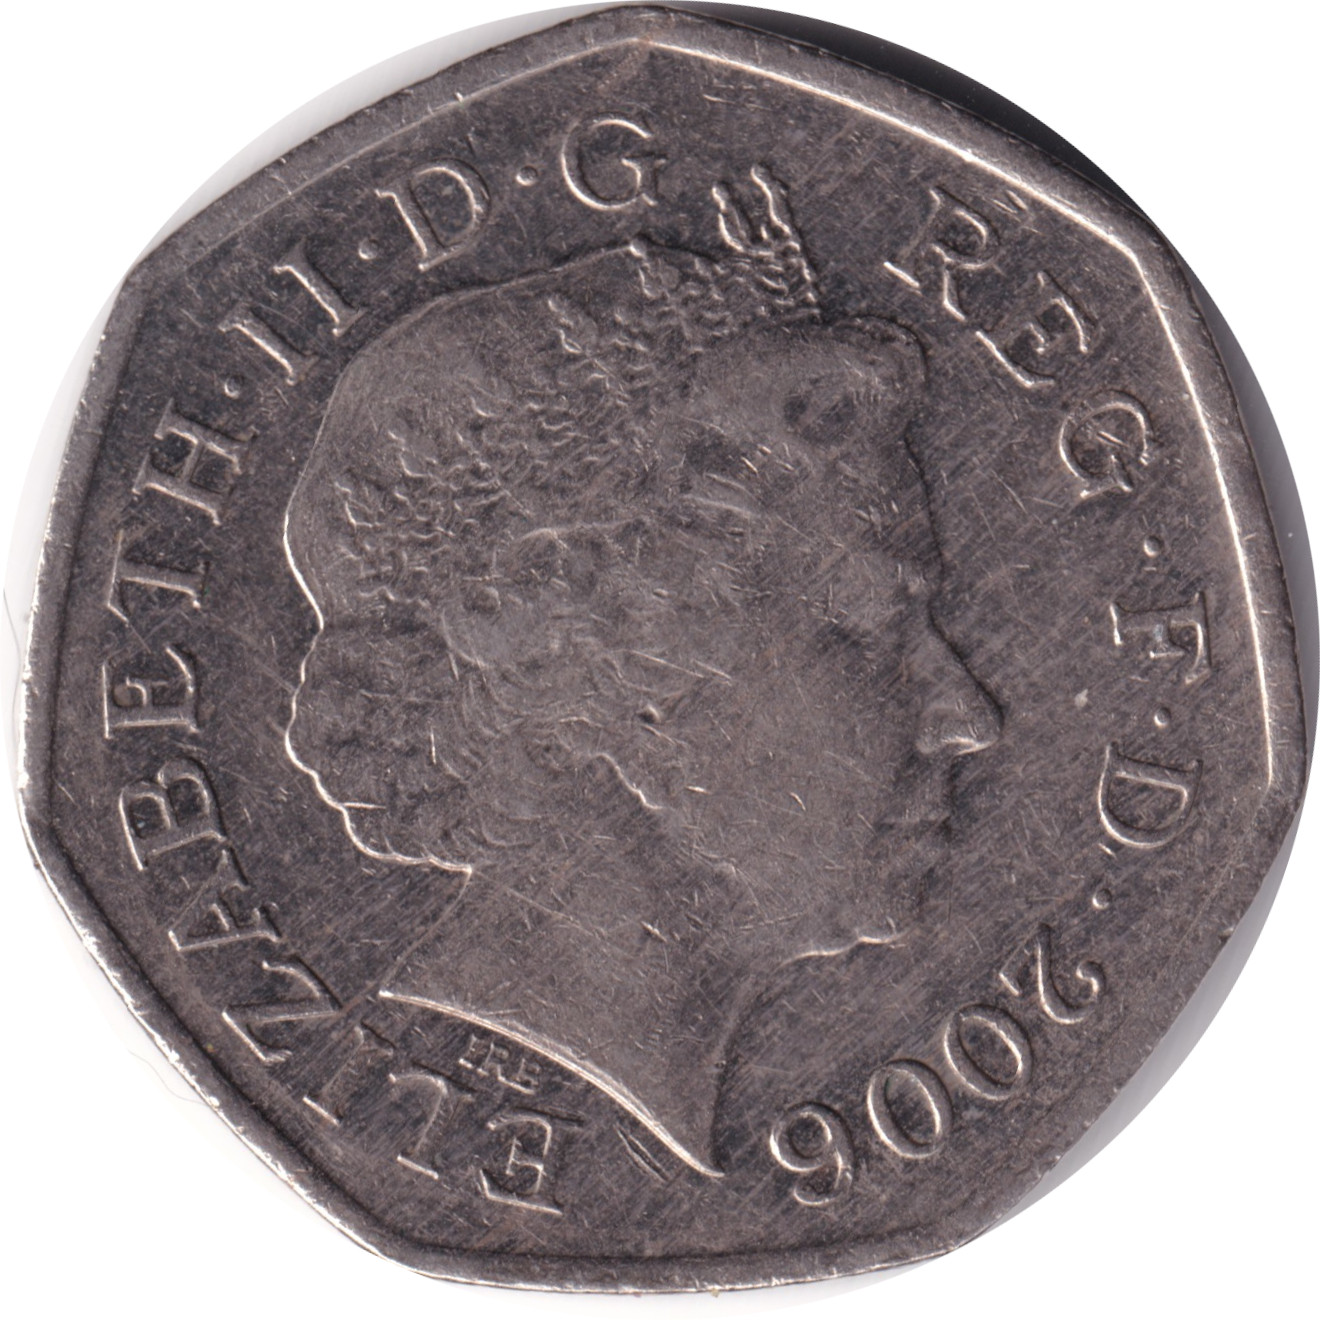 50 pence - Elizabeth II - Tête agée - Britannia